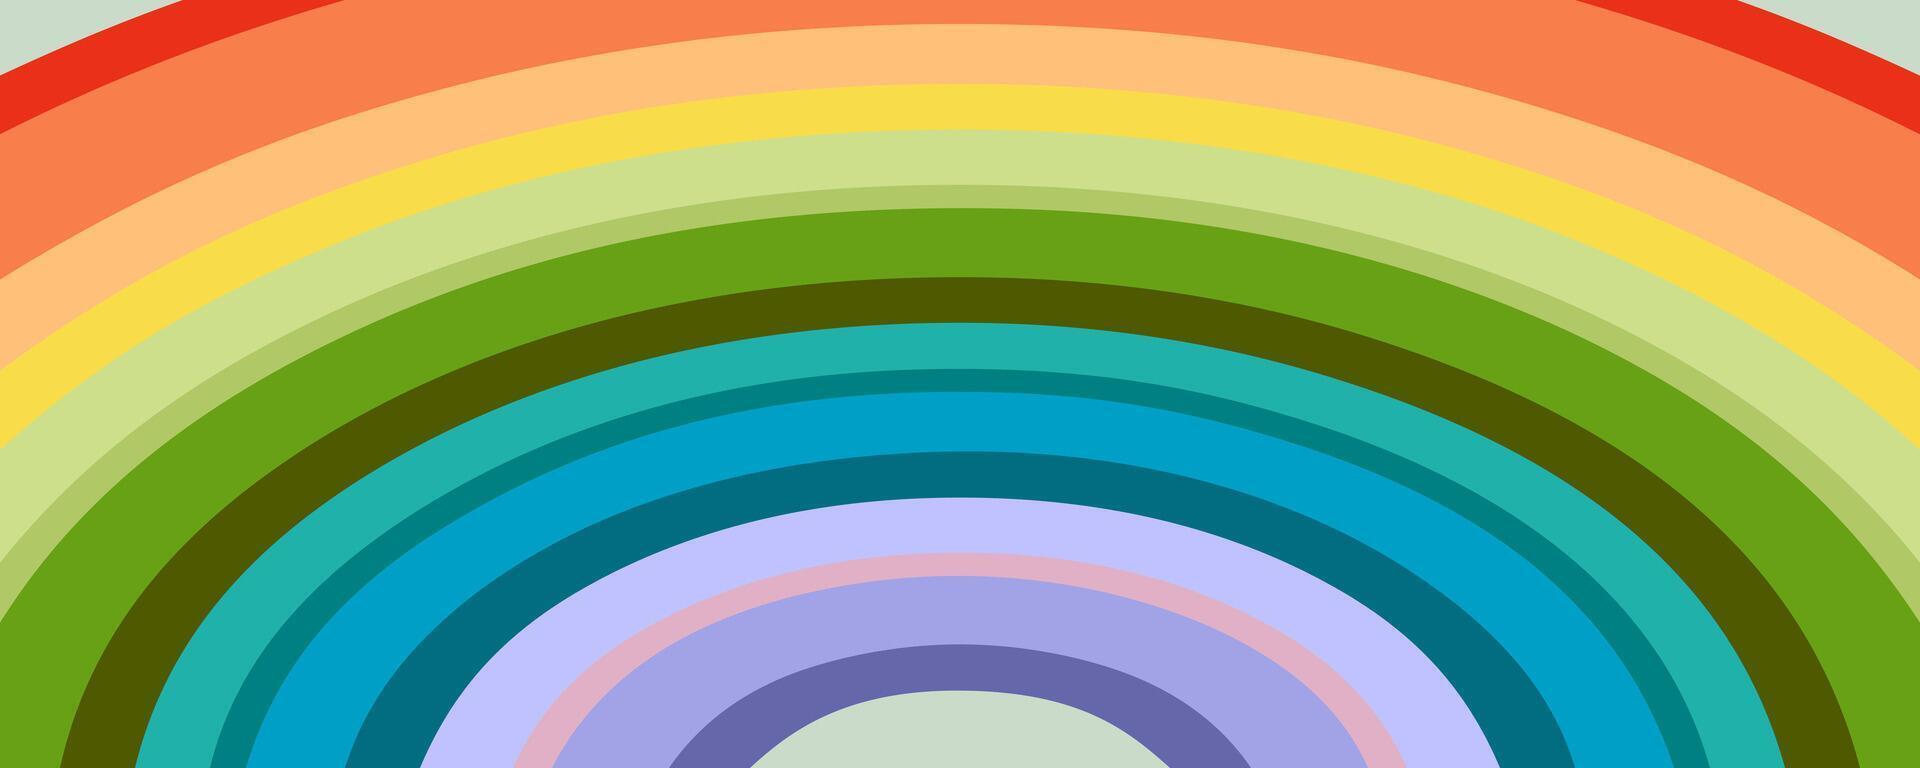 veelkleurig abstract regenboog spectrum vector achtergrond. perfect ontwerp voor affiches, kaarten, spandoeken, afdrukken. hand- getrokken vector illustratie.